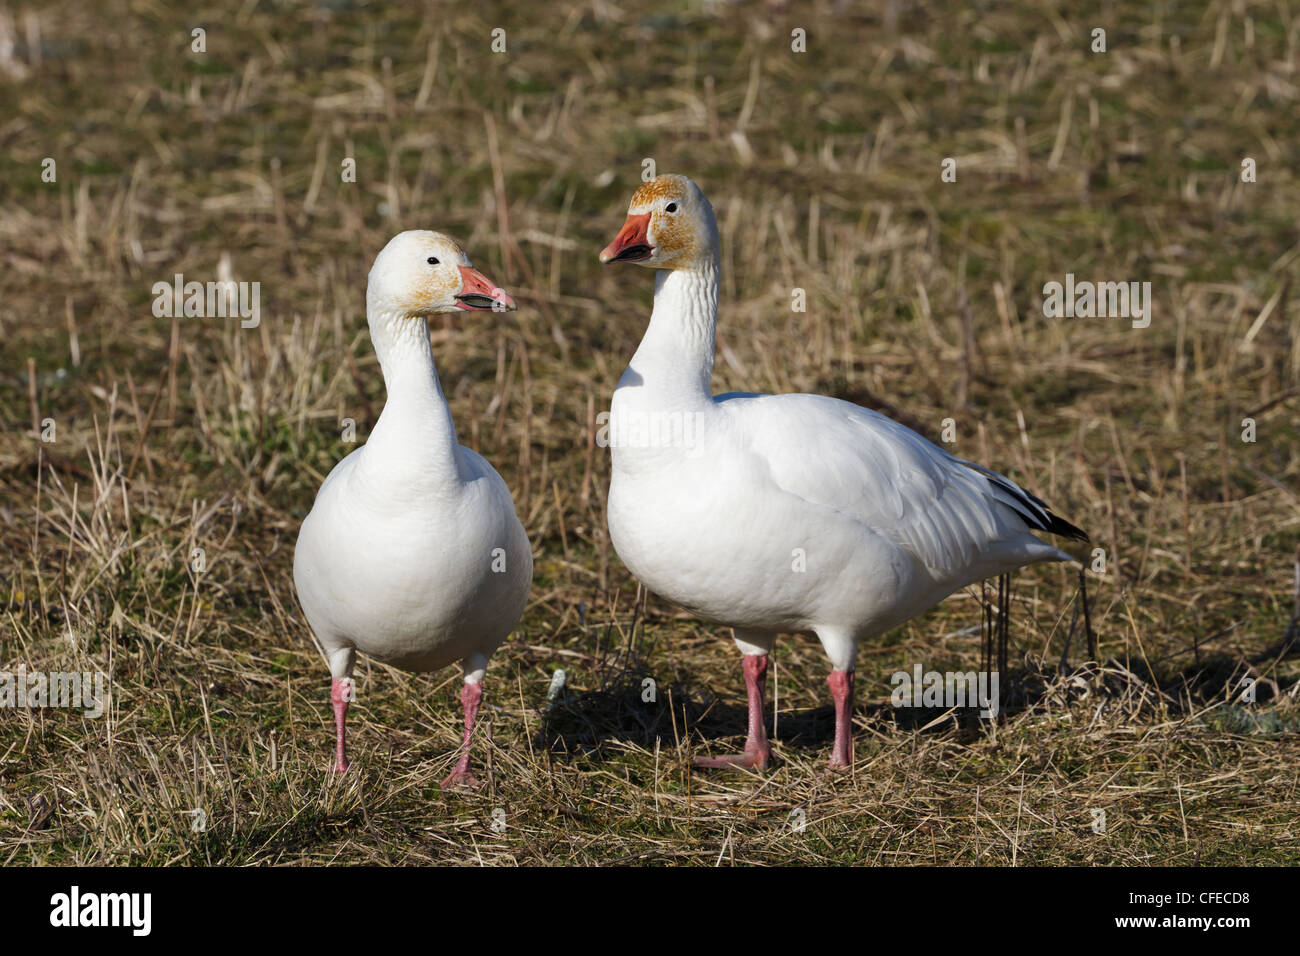 Snow Goose, migratory bird close up shot Stock Photo